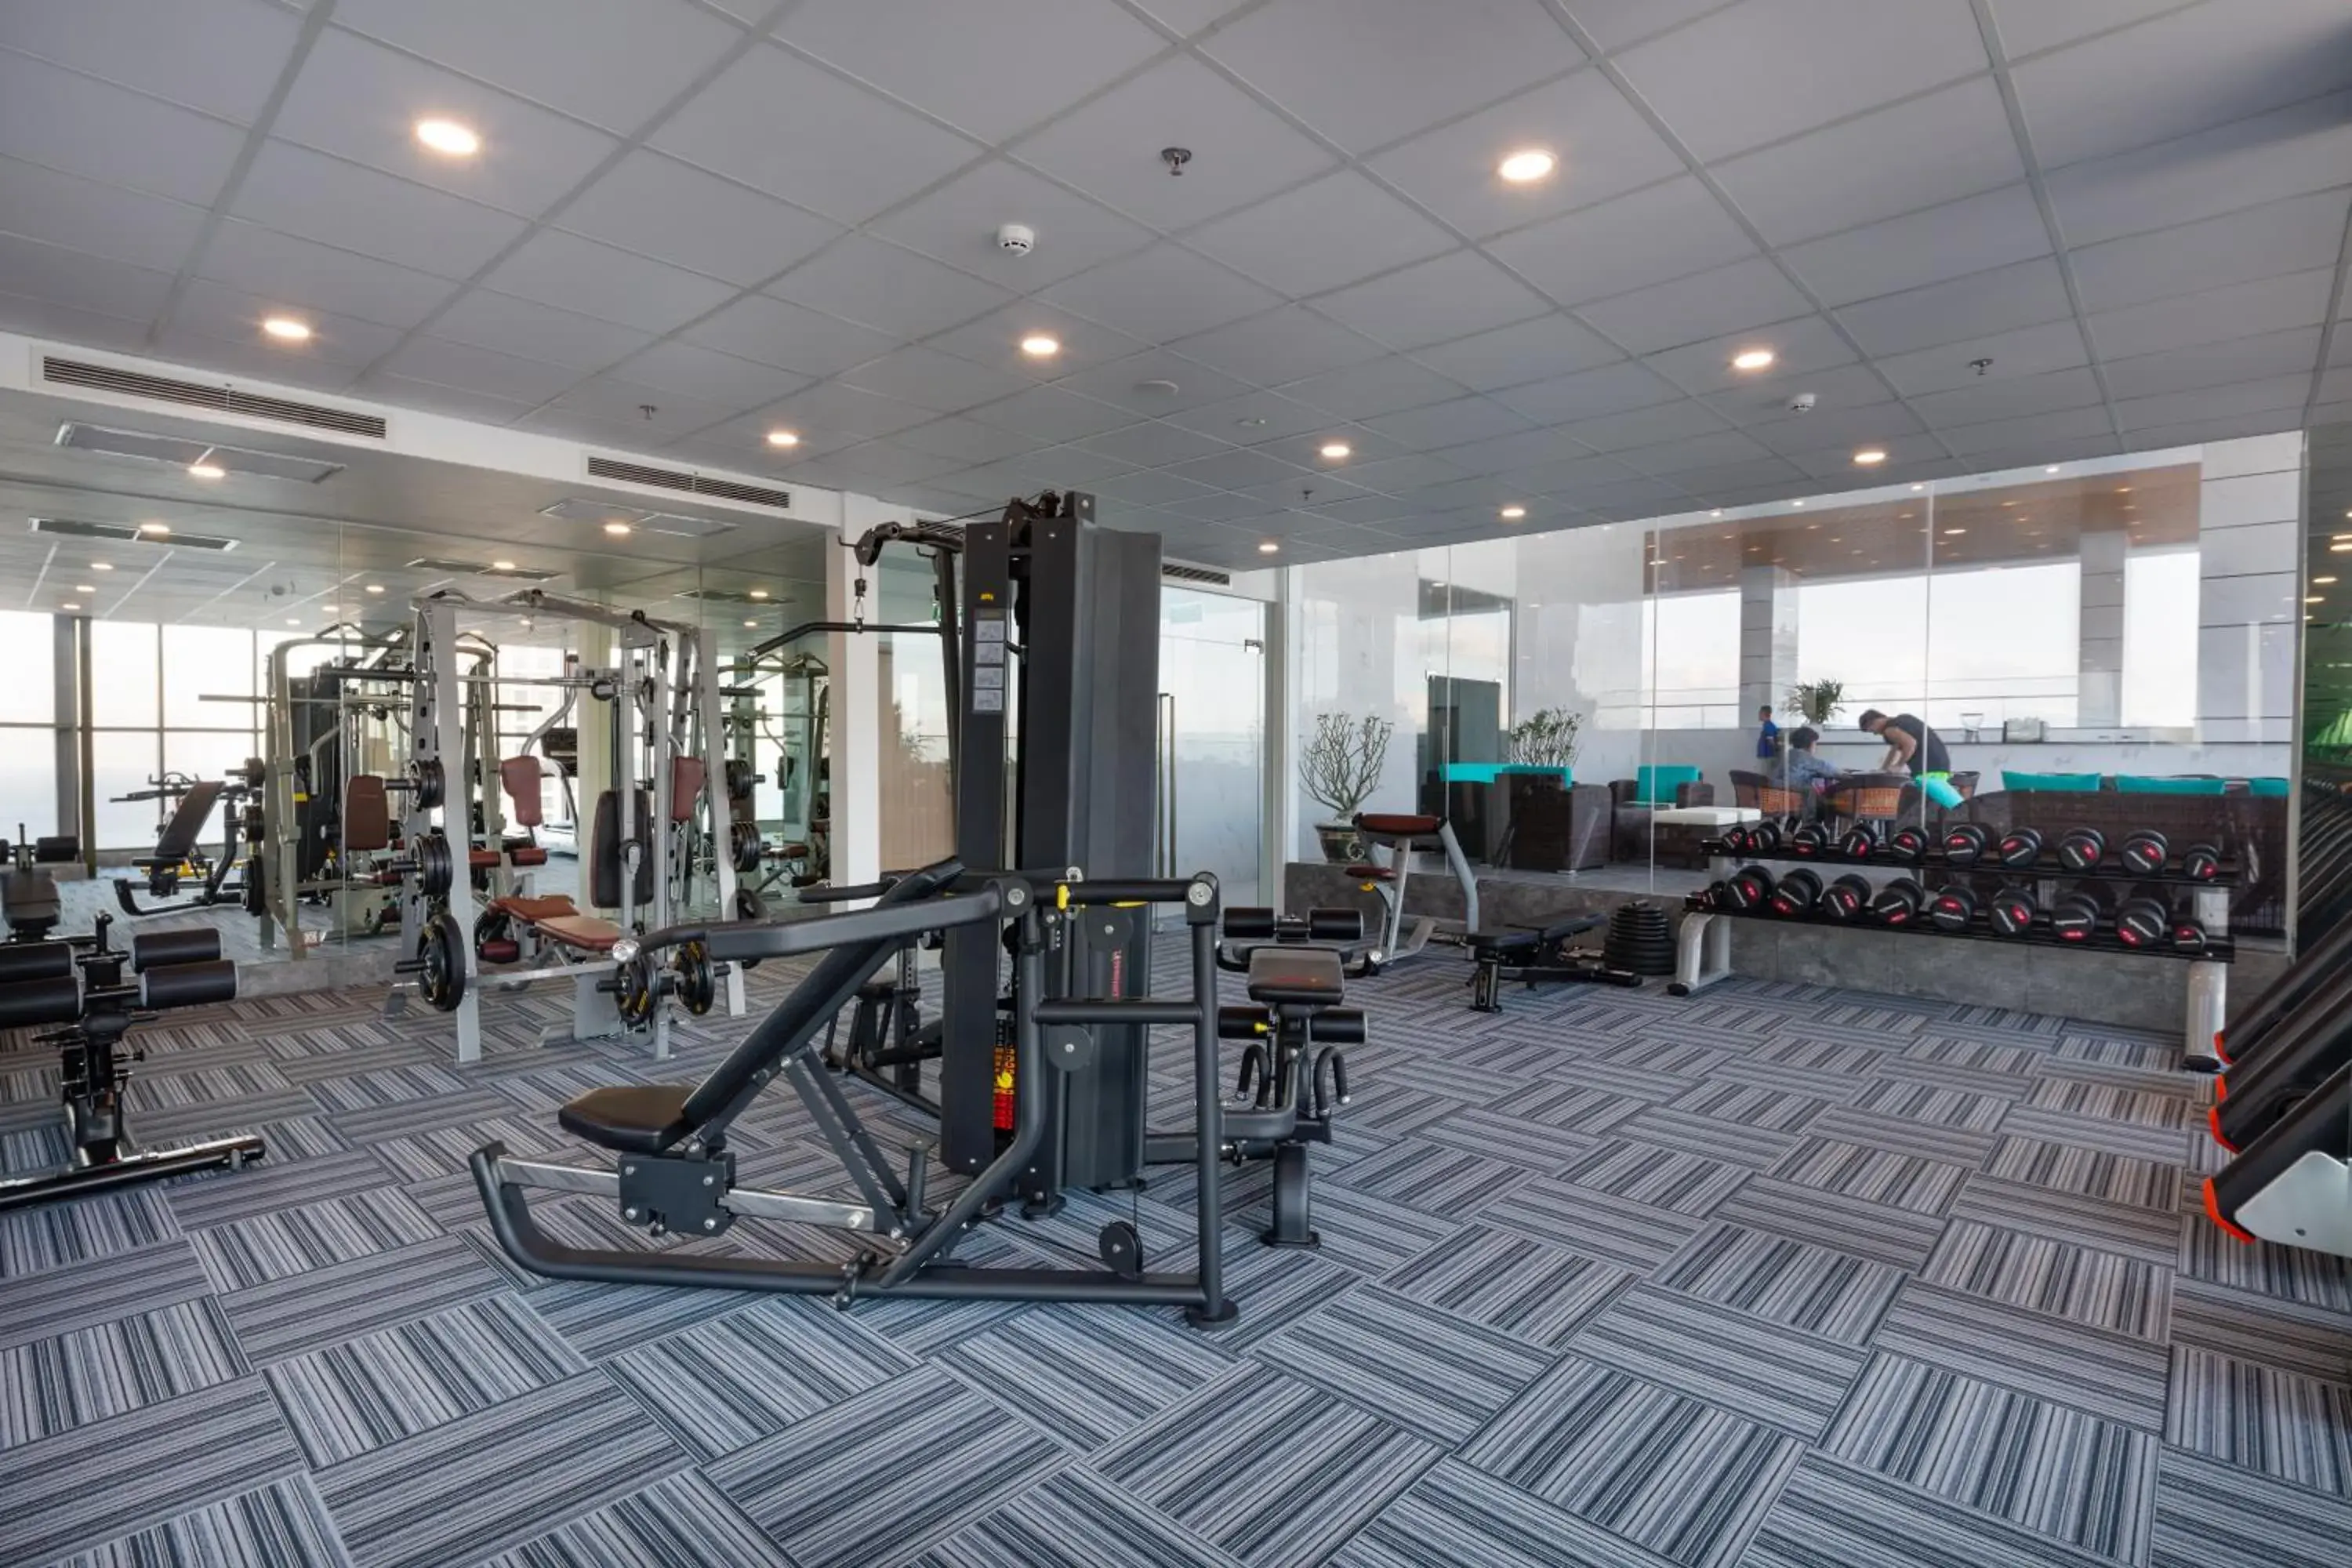 Fitness centre/facilities, Fitness Center/Facilities in Virgo Hotel